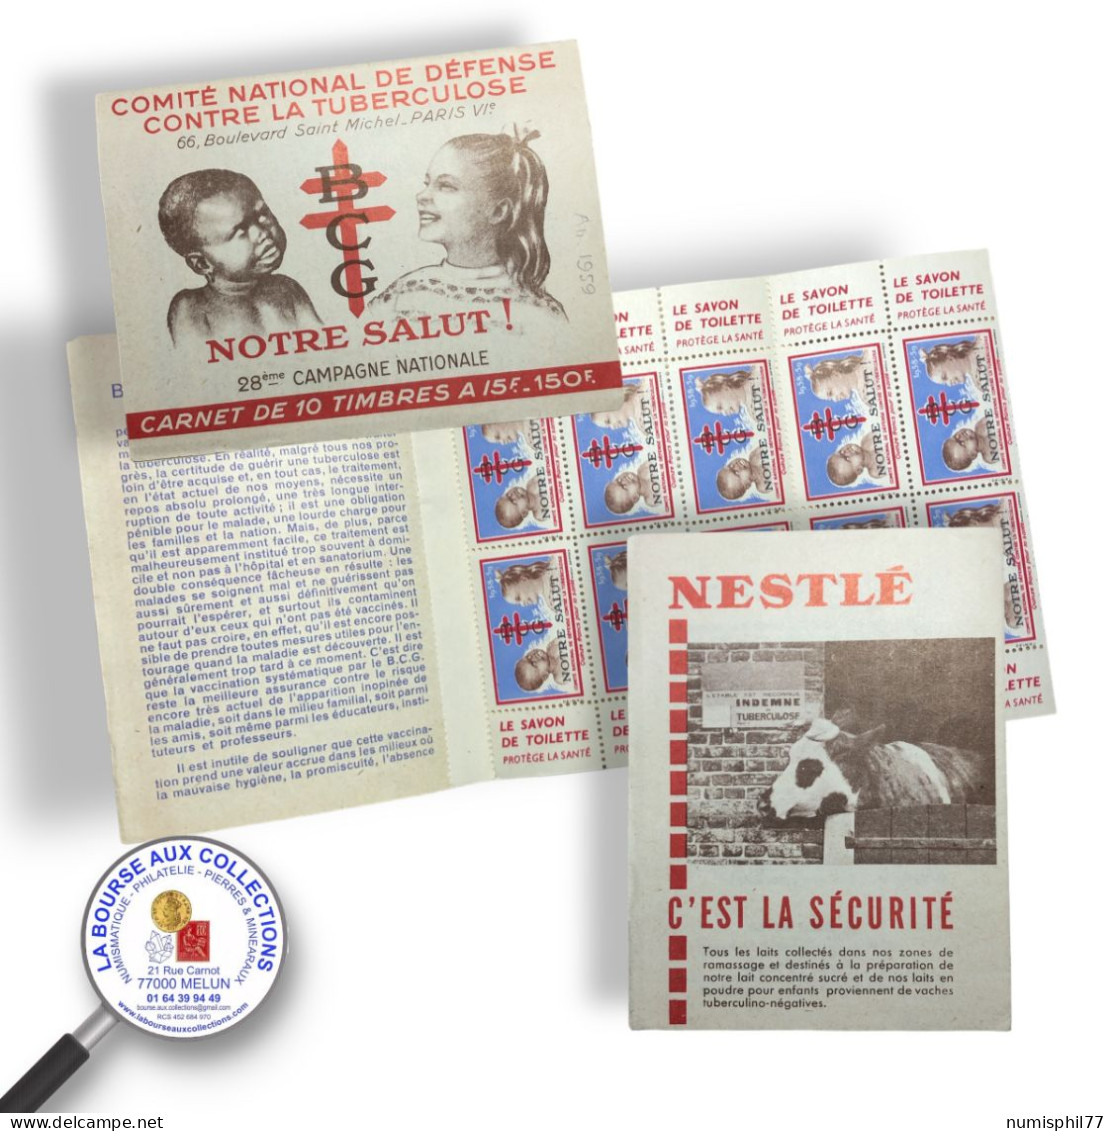 CARNET 1959 - 28ème CAMPAGNE NATIONALE / Netslé - Antituberculeux